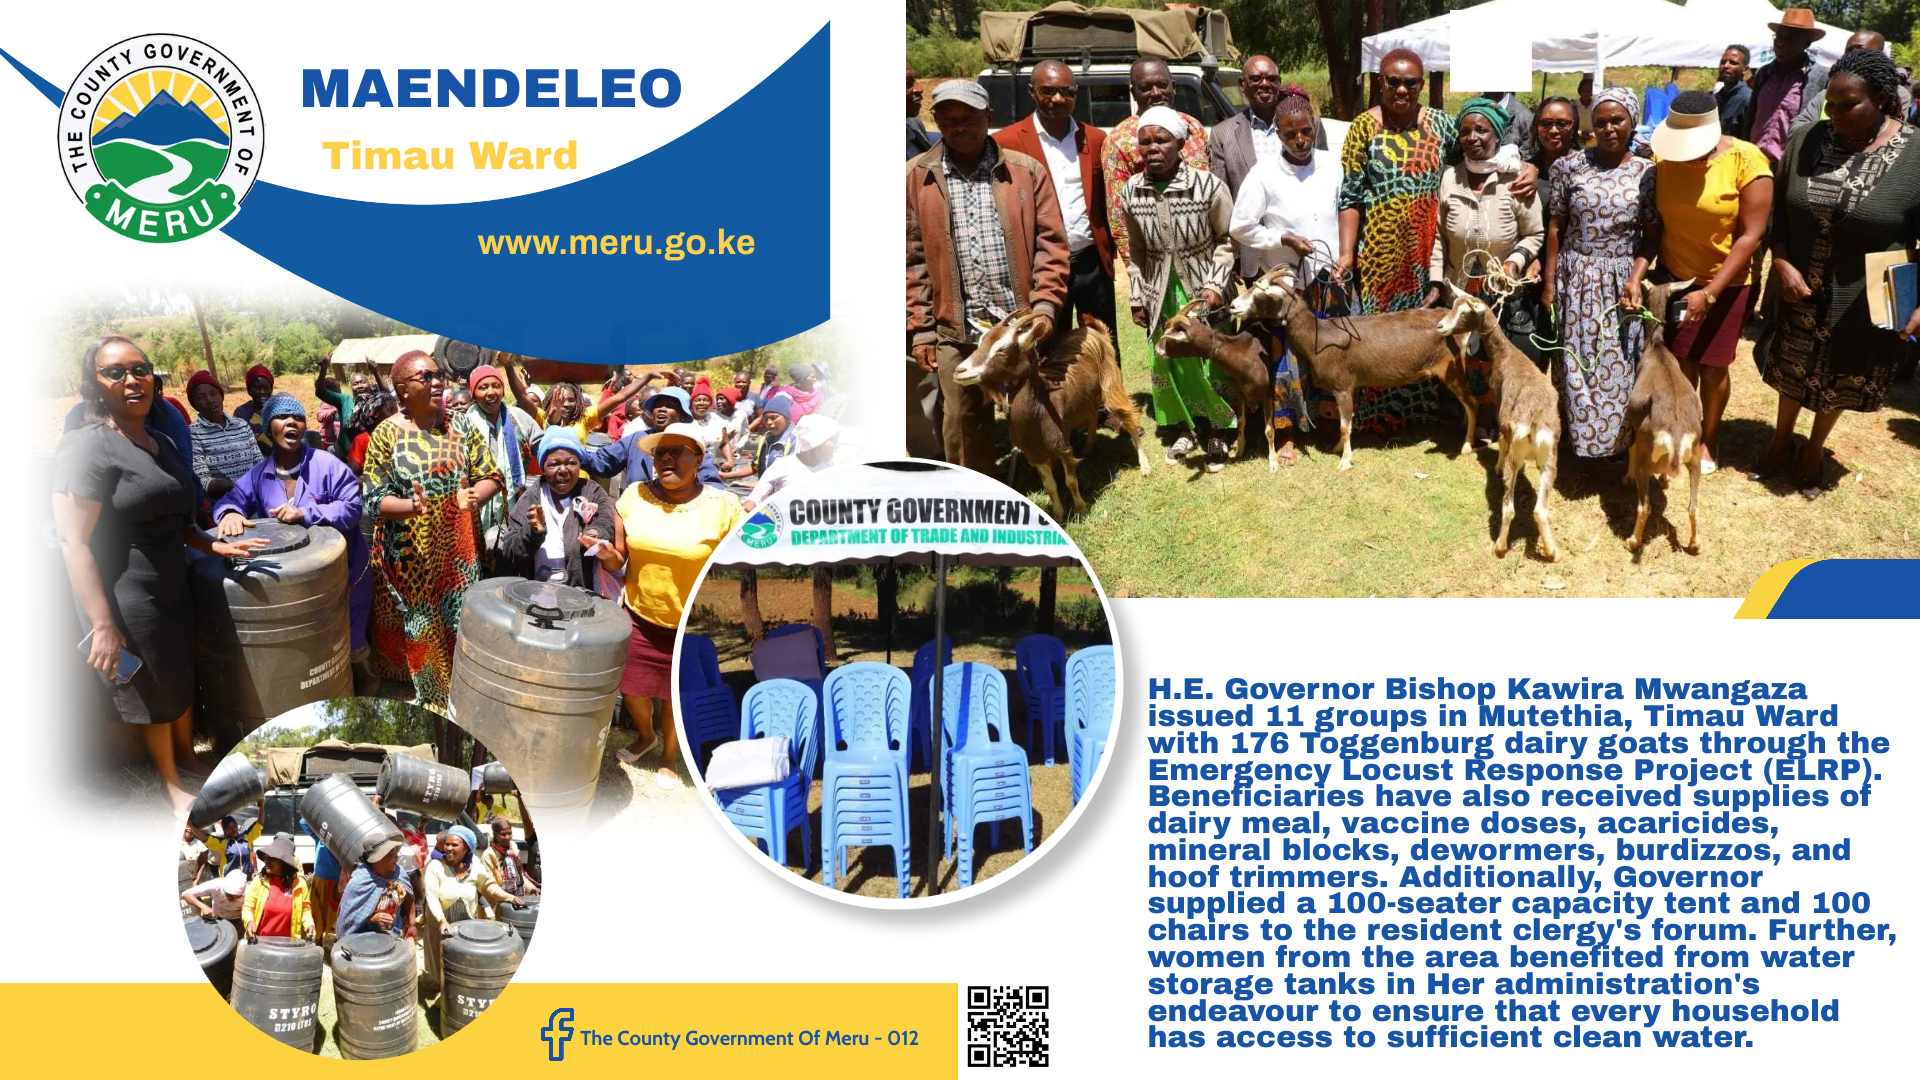 Empowering Women and target groups: Governor Bishop Kawira Mwangaza distributes Toggenburg Dairy Goats in Timau Ward.